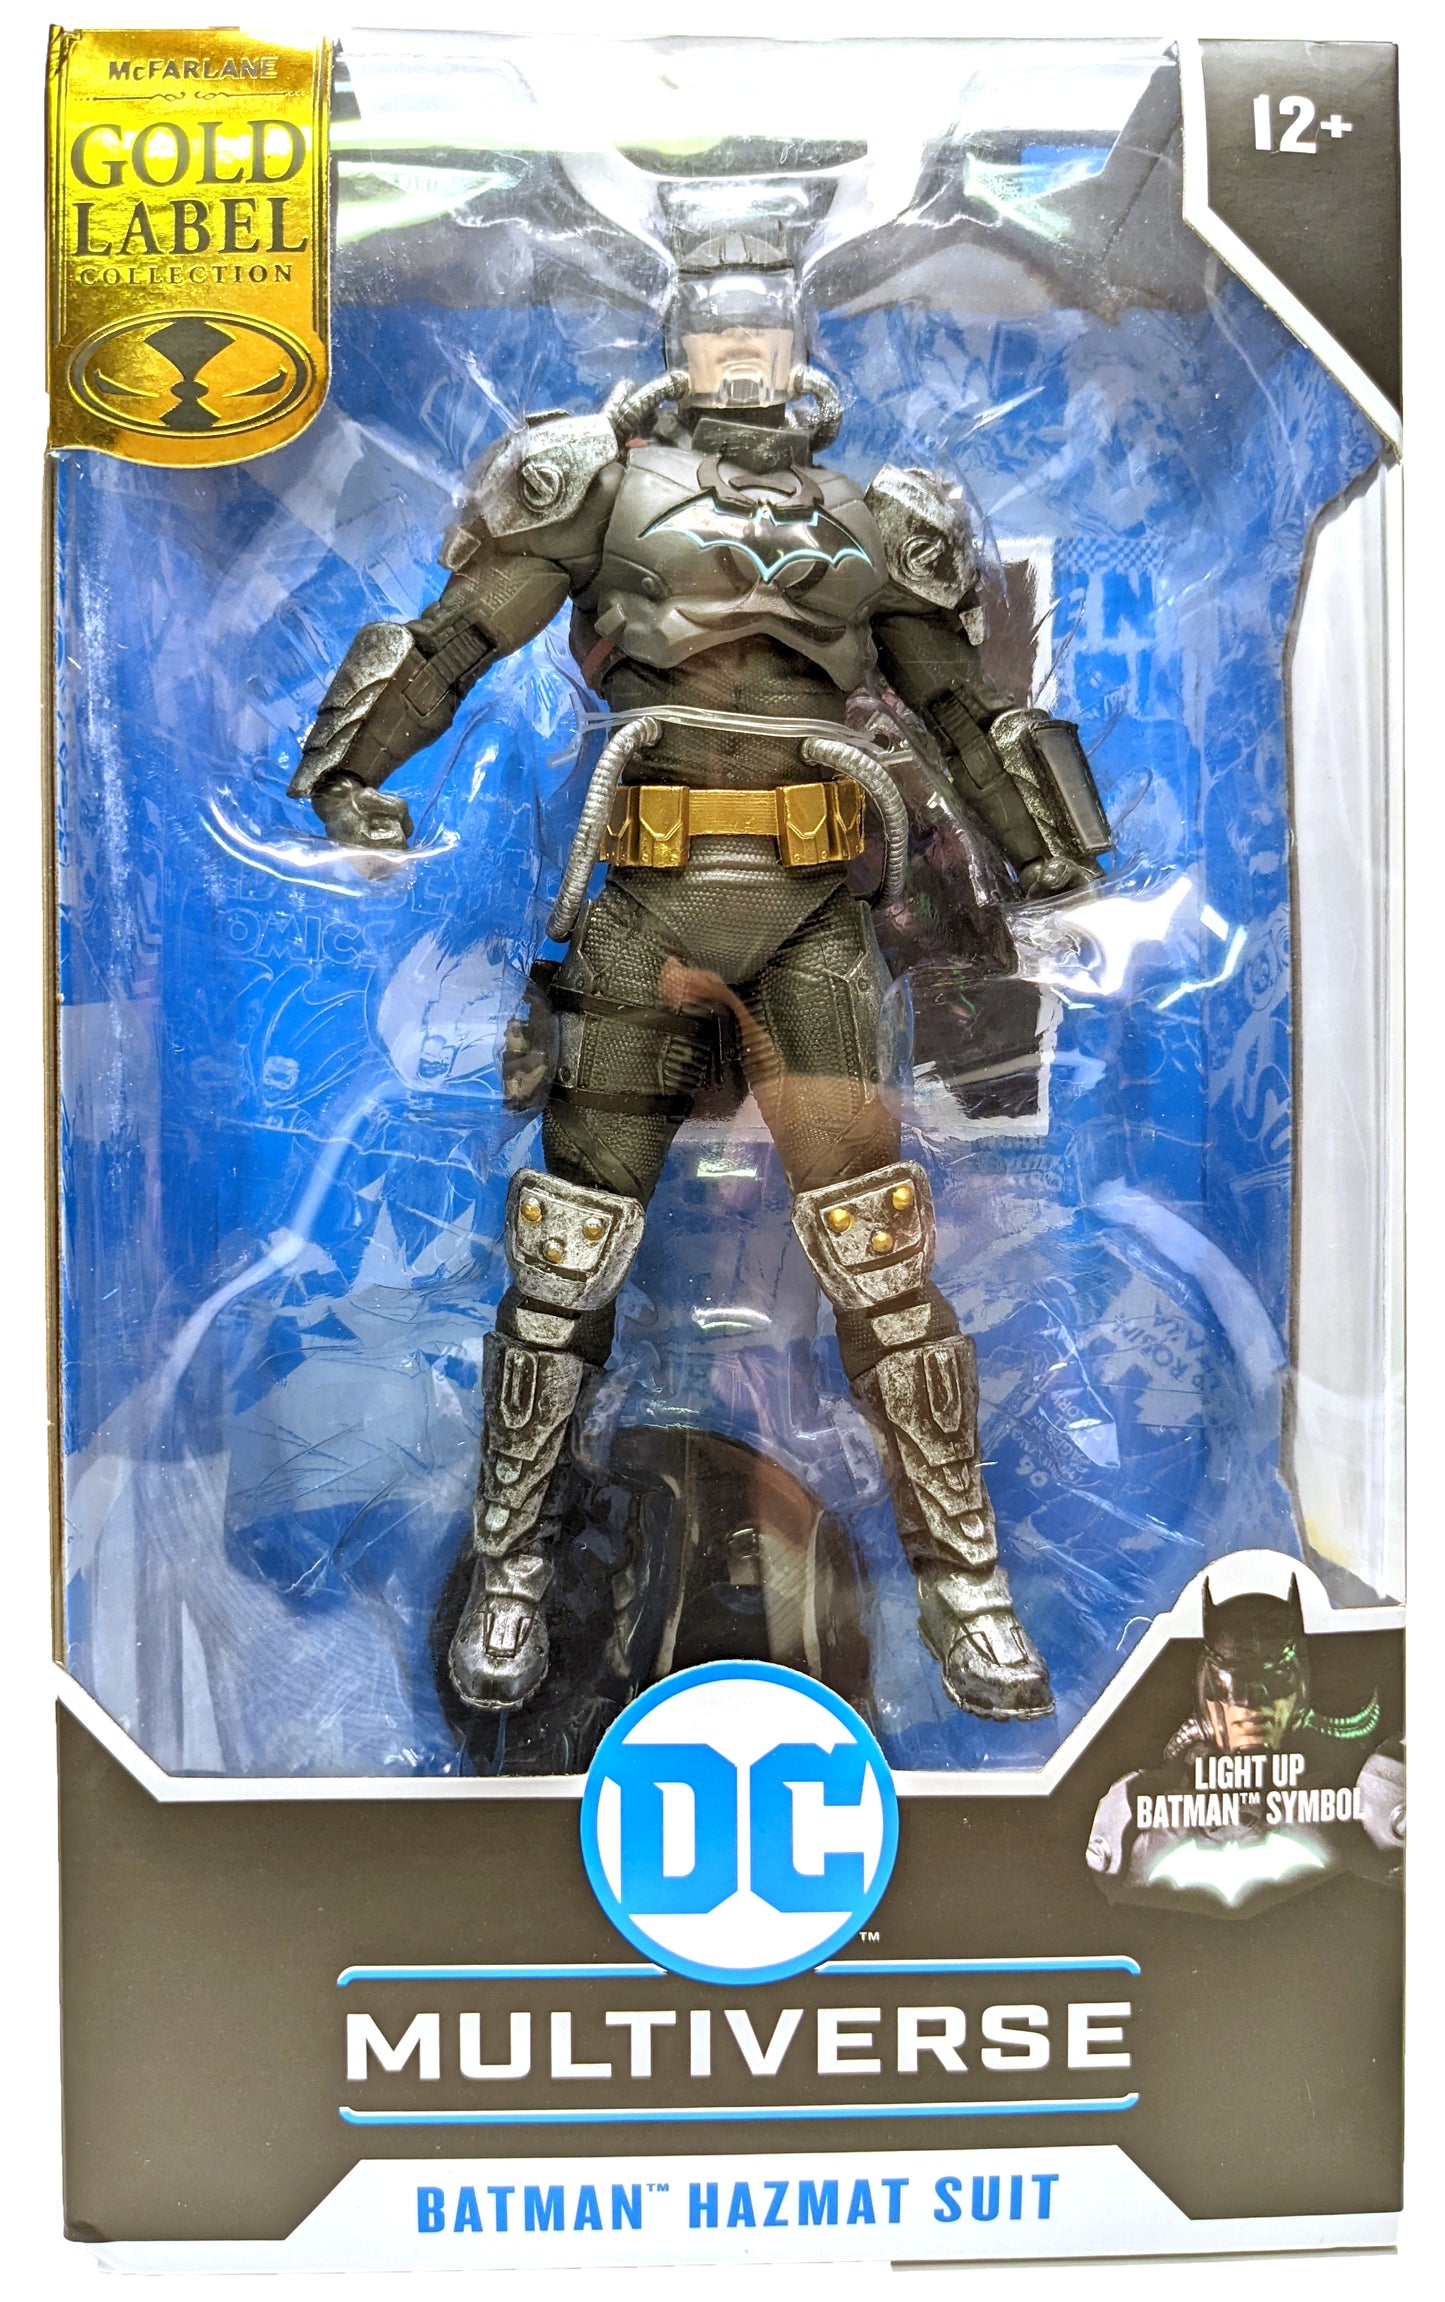 DC MultiverseDC Multiverse - Batman Hazmat Suit - Gold Label - Target Exclusive